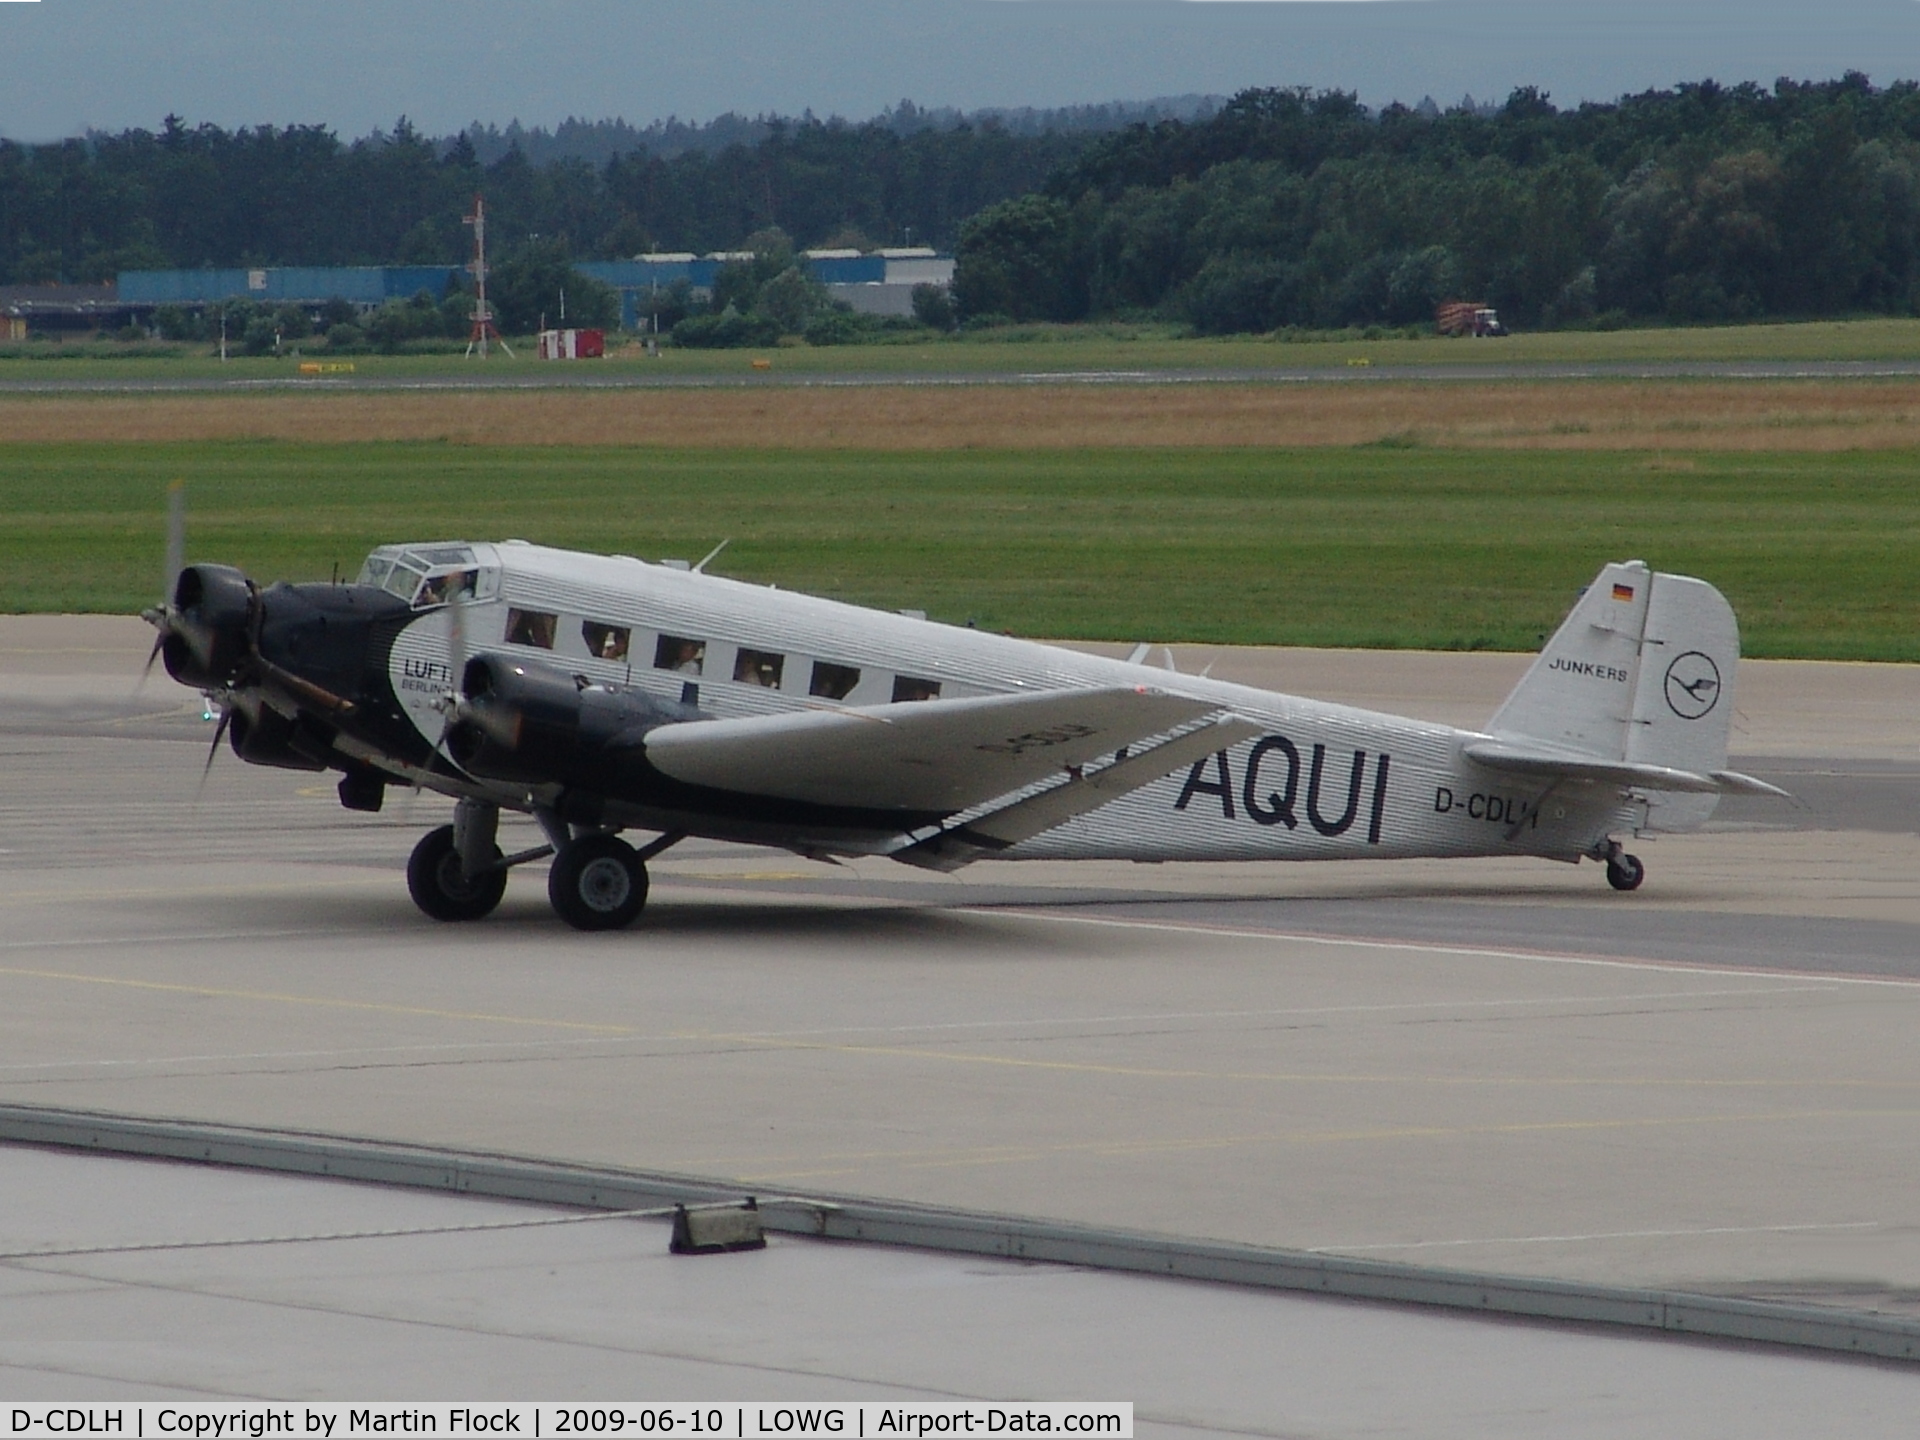 D-CDLH, 1936 Junkers Ju-52/3m C/N 130714, .